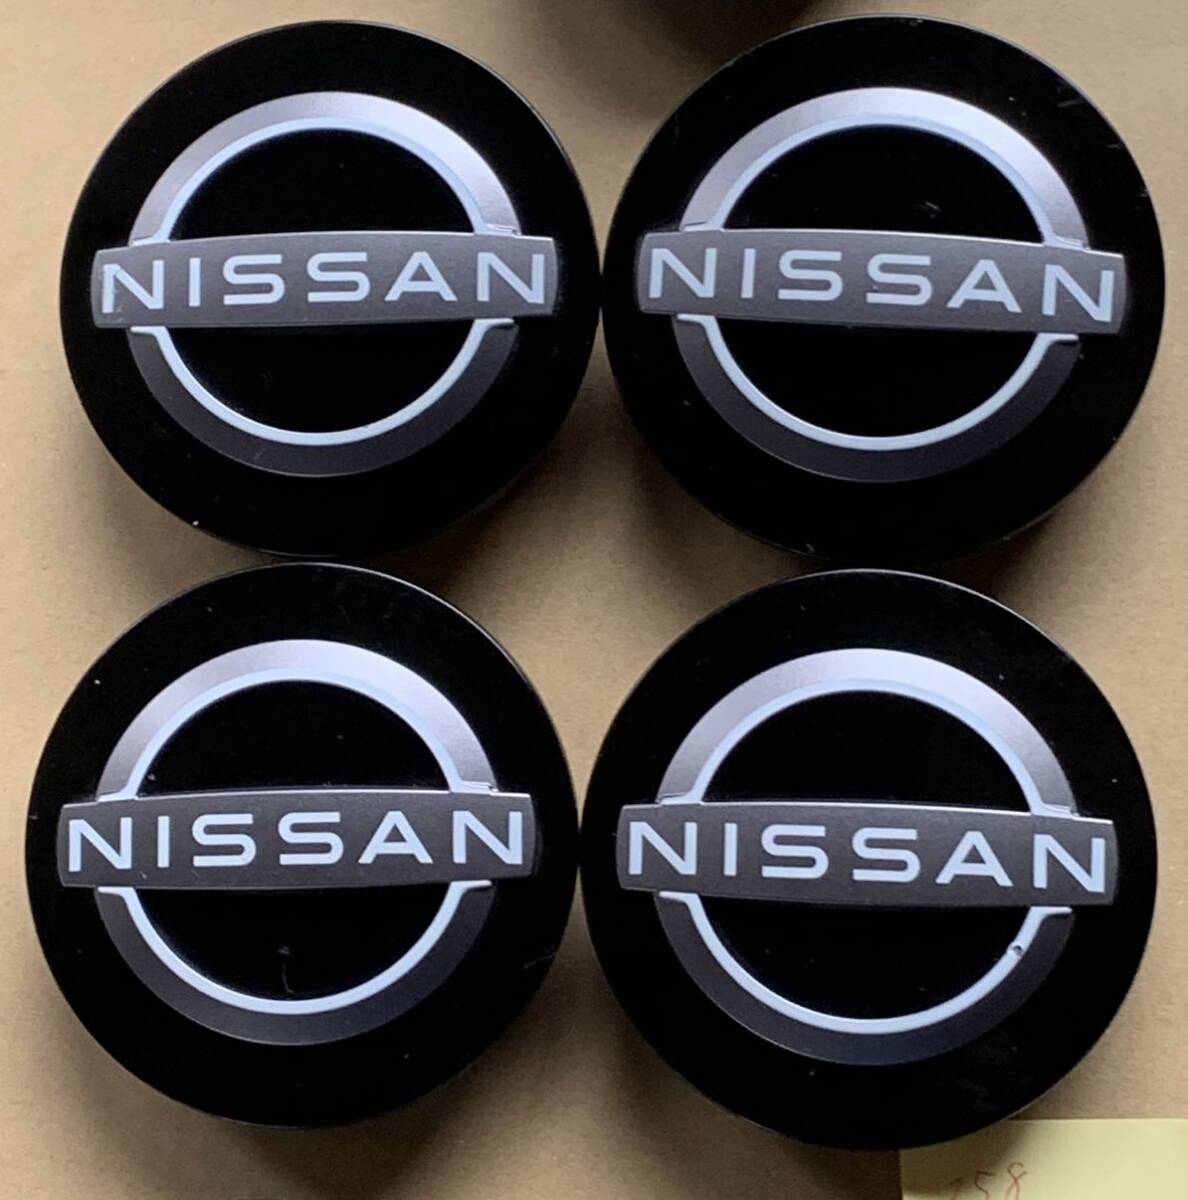  Nissan NISSAN колпаки новый Logo 